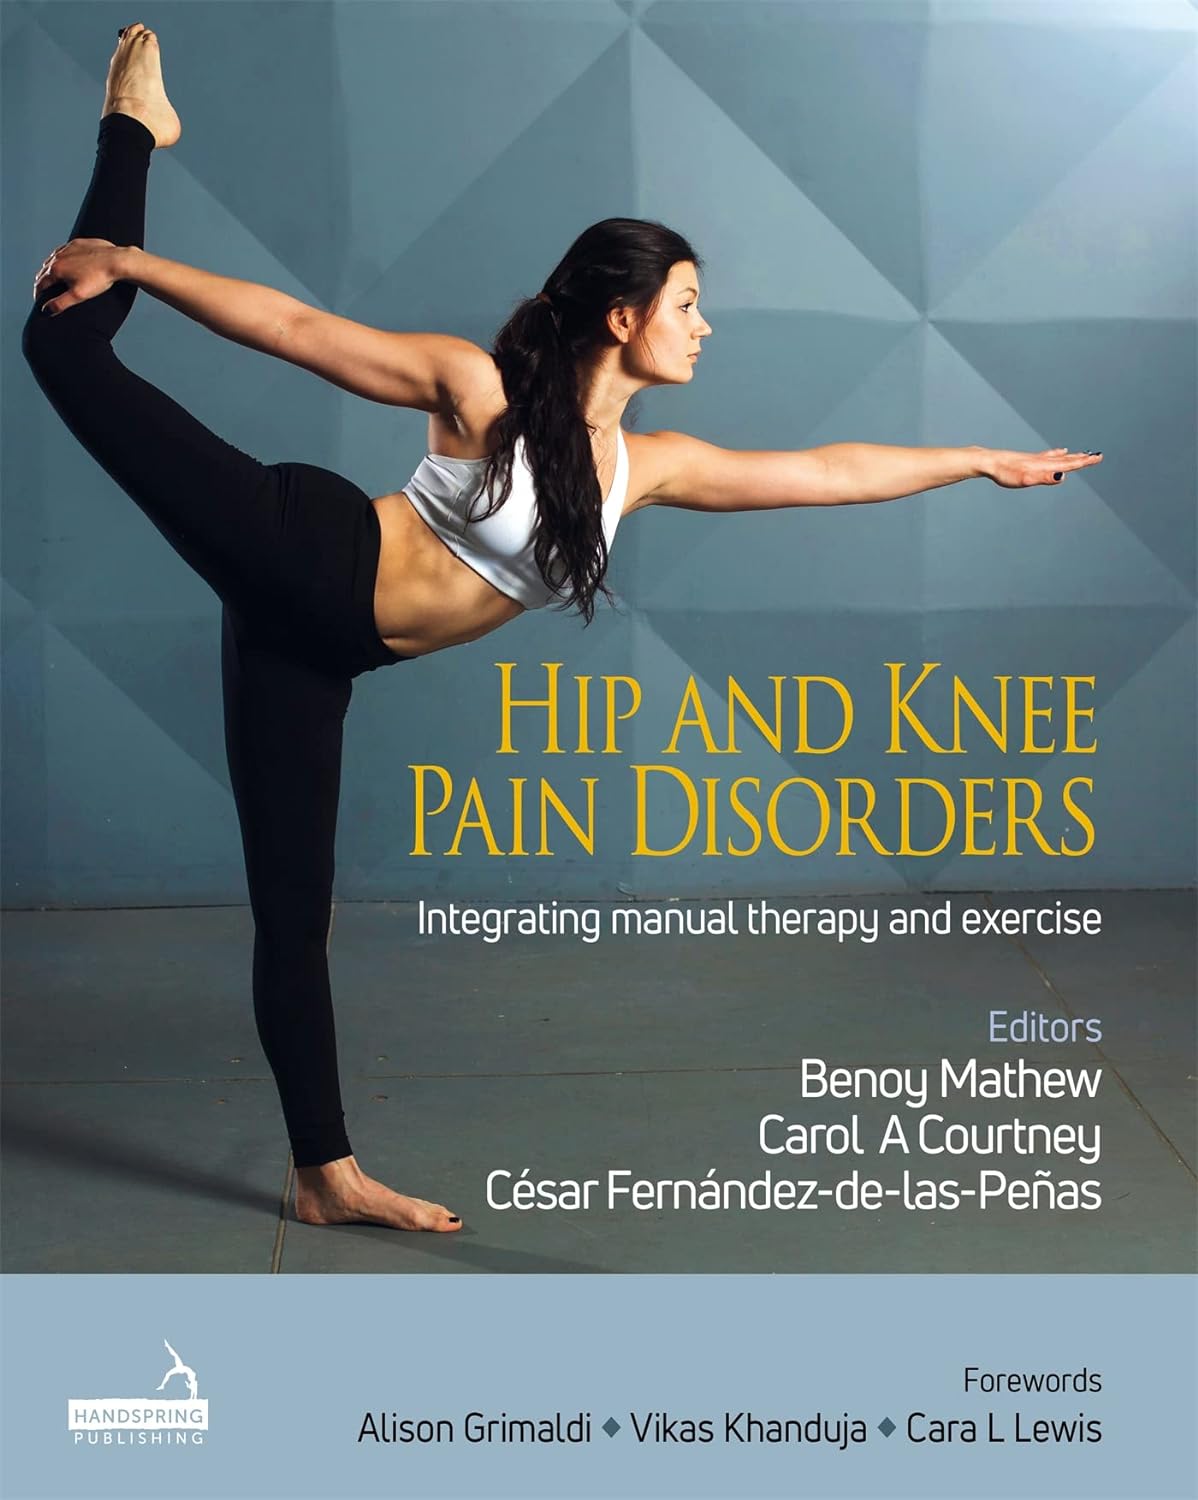 Bóle bioder i kolan Podejście oparte na dowodach i badaniach klinicznych, łączące terapię manualną i ćwiczenia